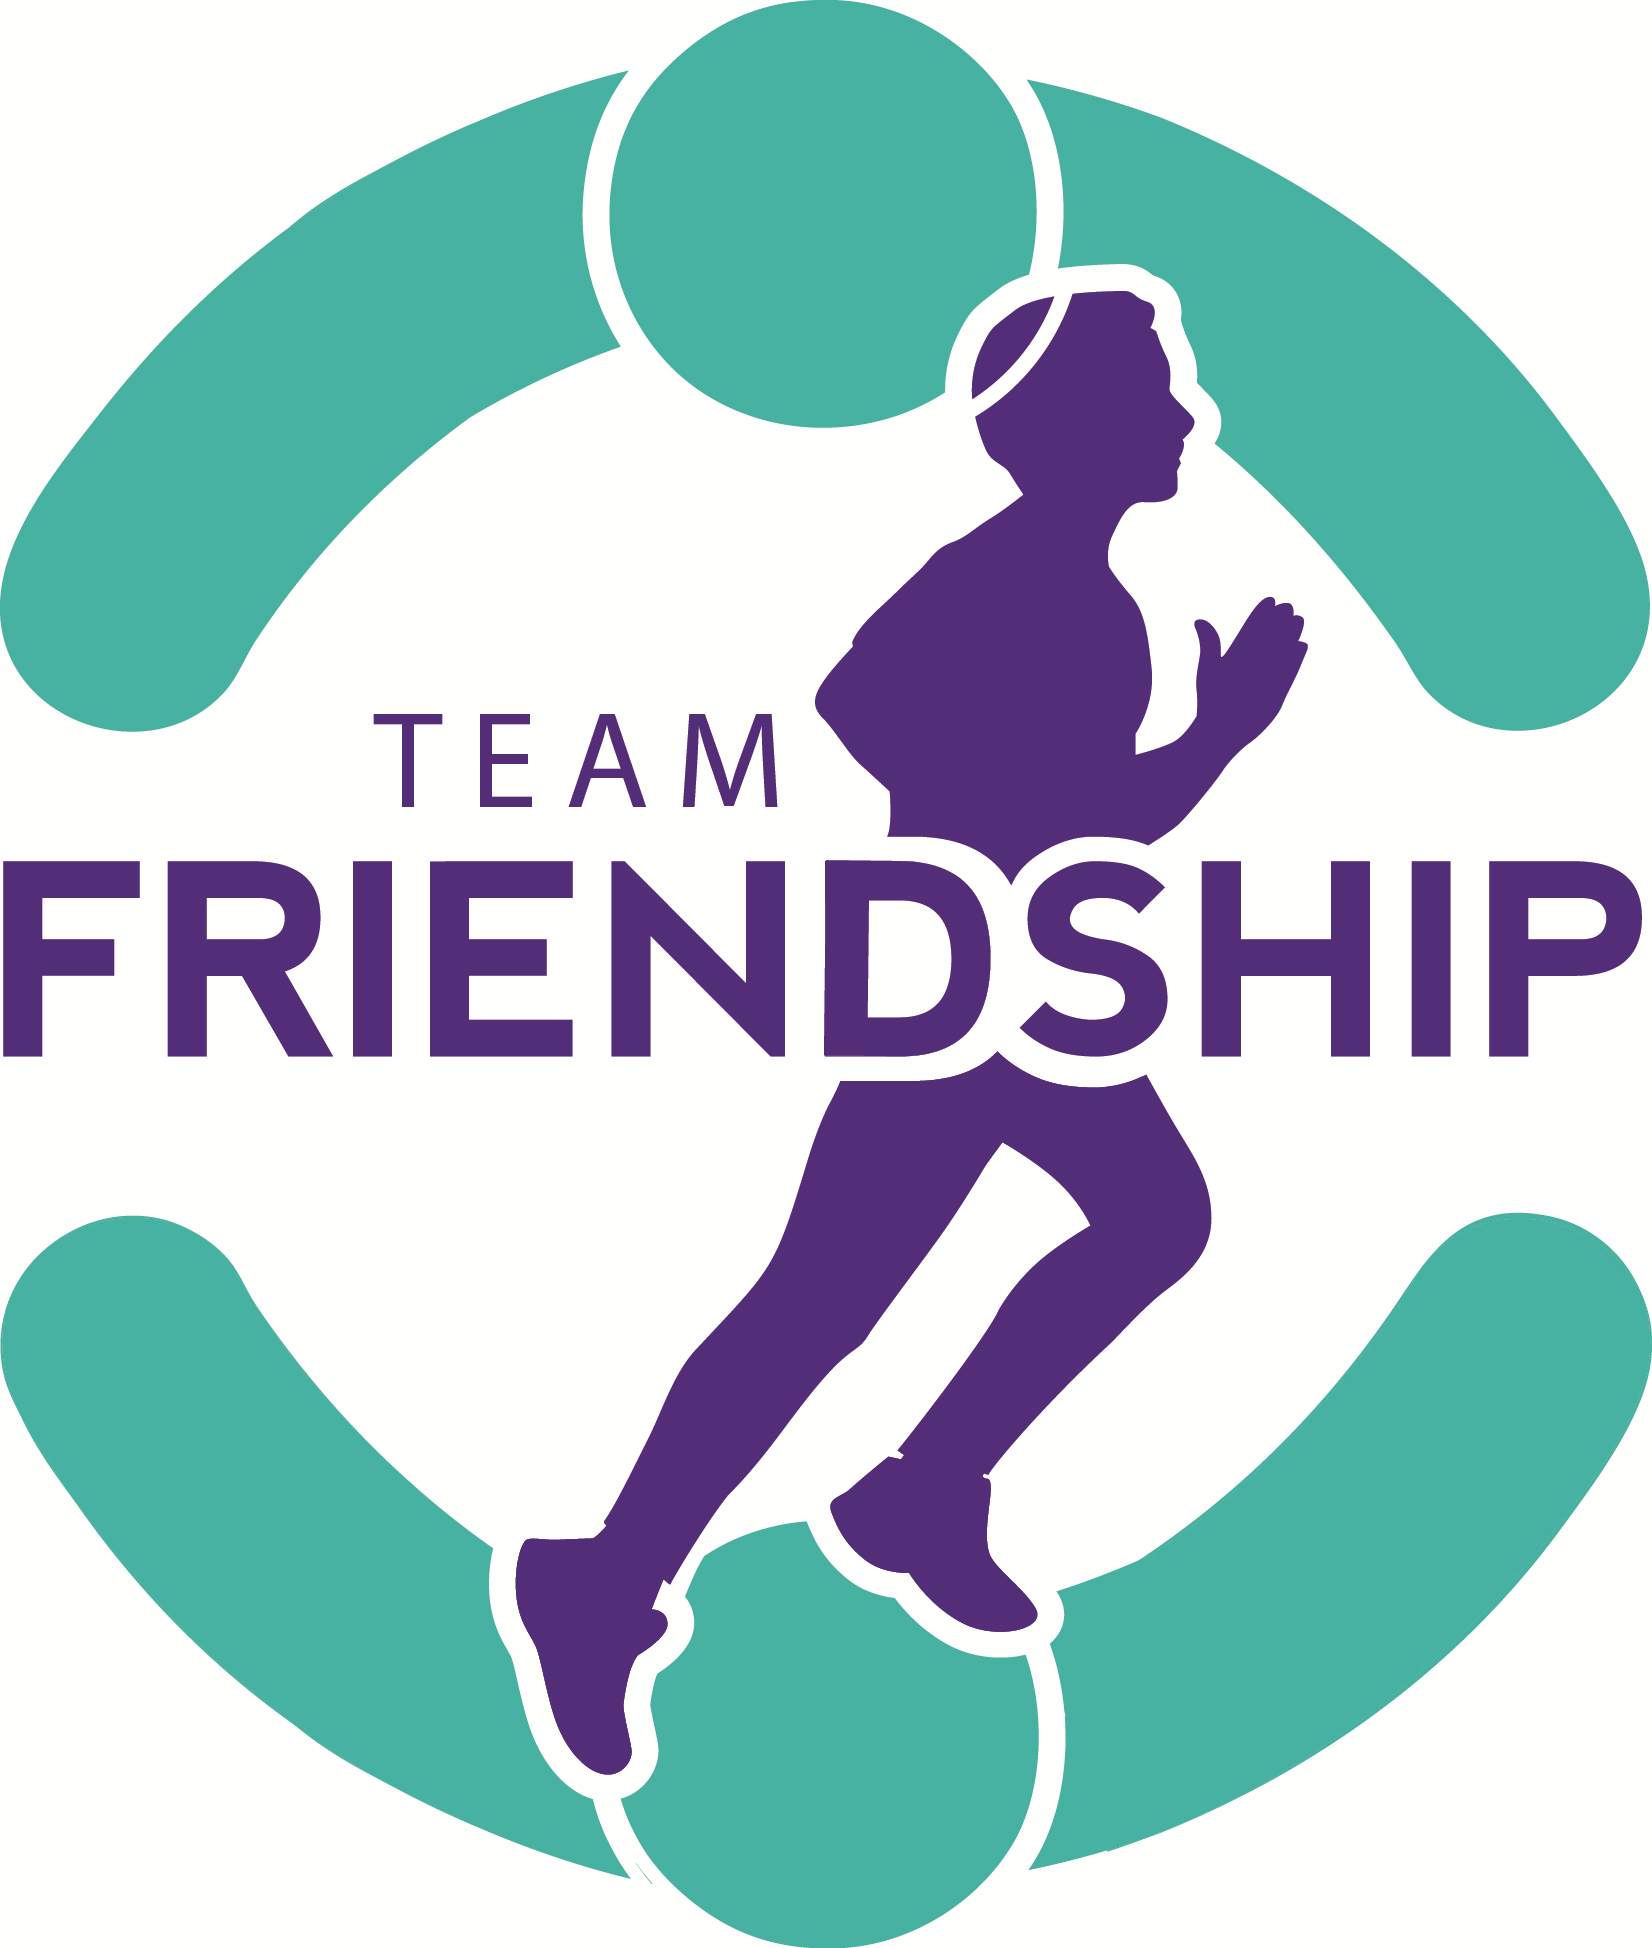 Friendship Circle Logo - logo2 - Friendship Circle of Brooklyn